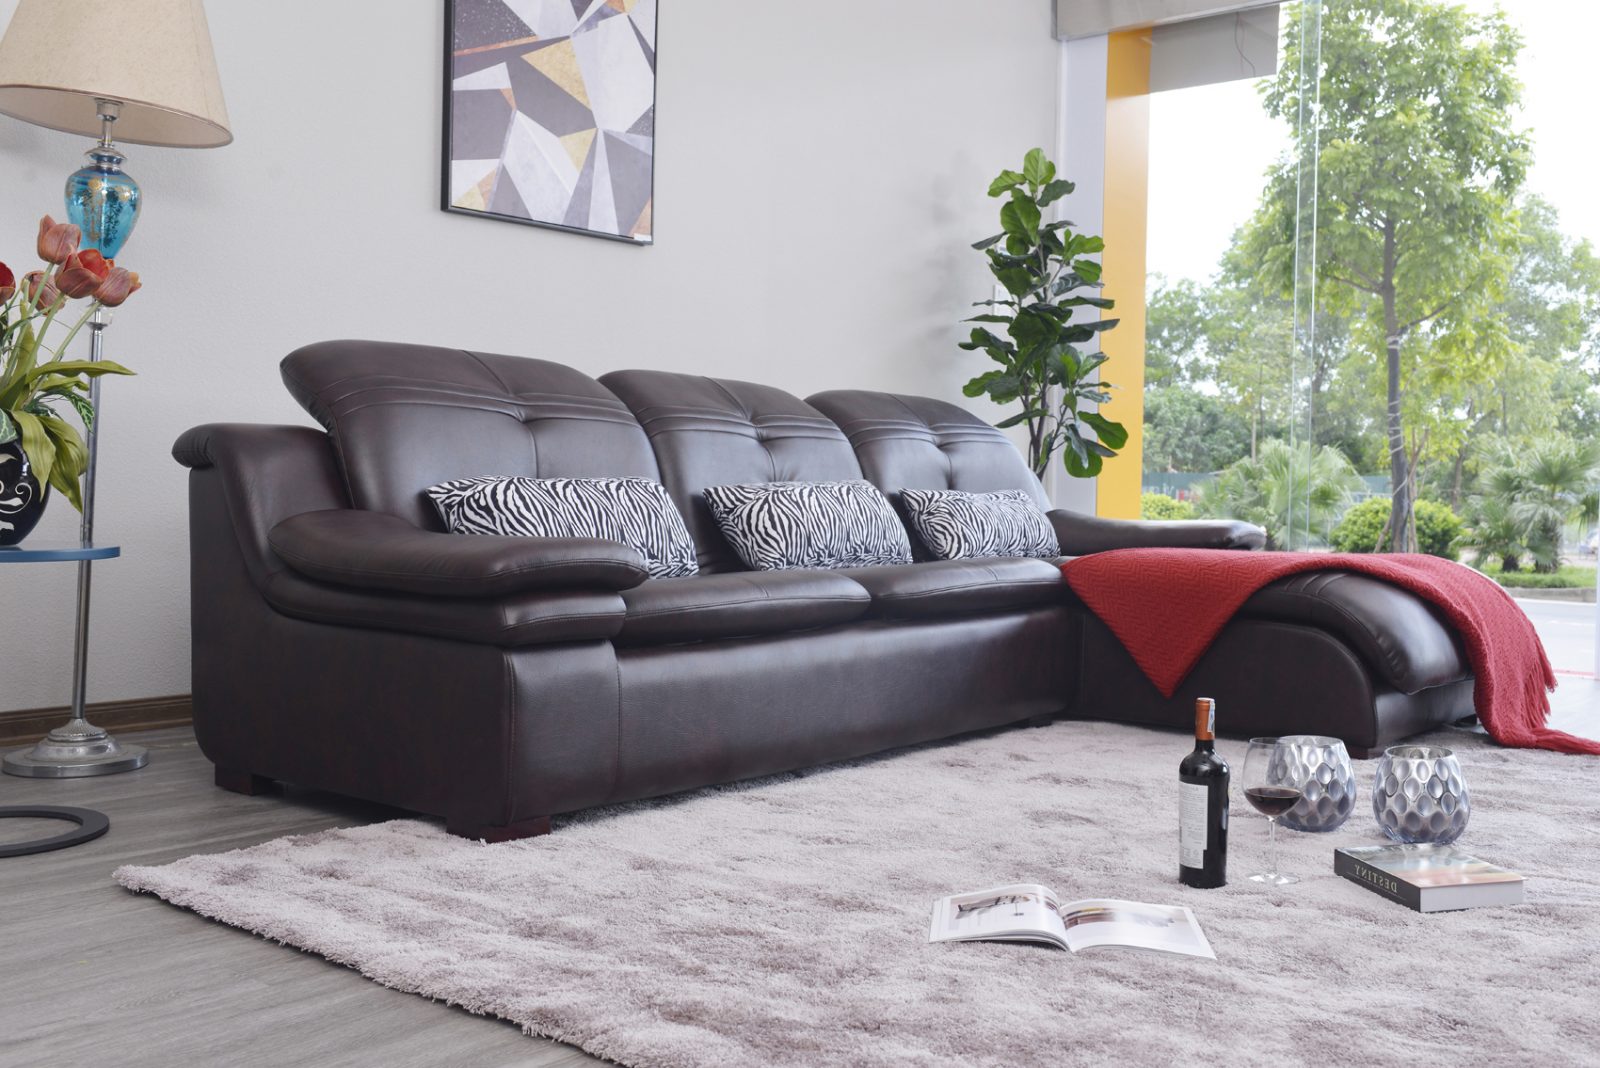 Sofa da hiện đại cho phòng khách ST0902-2-D1